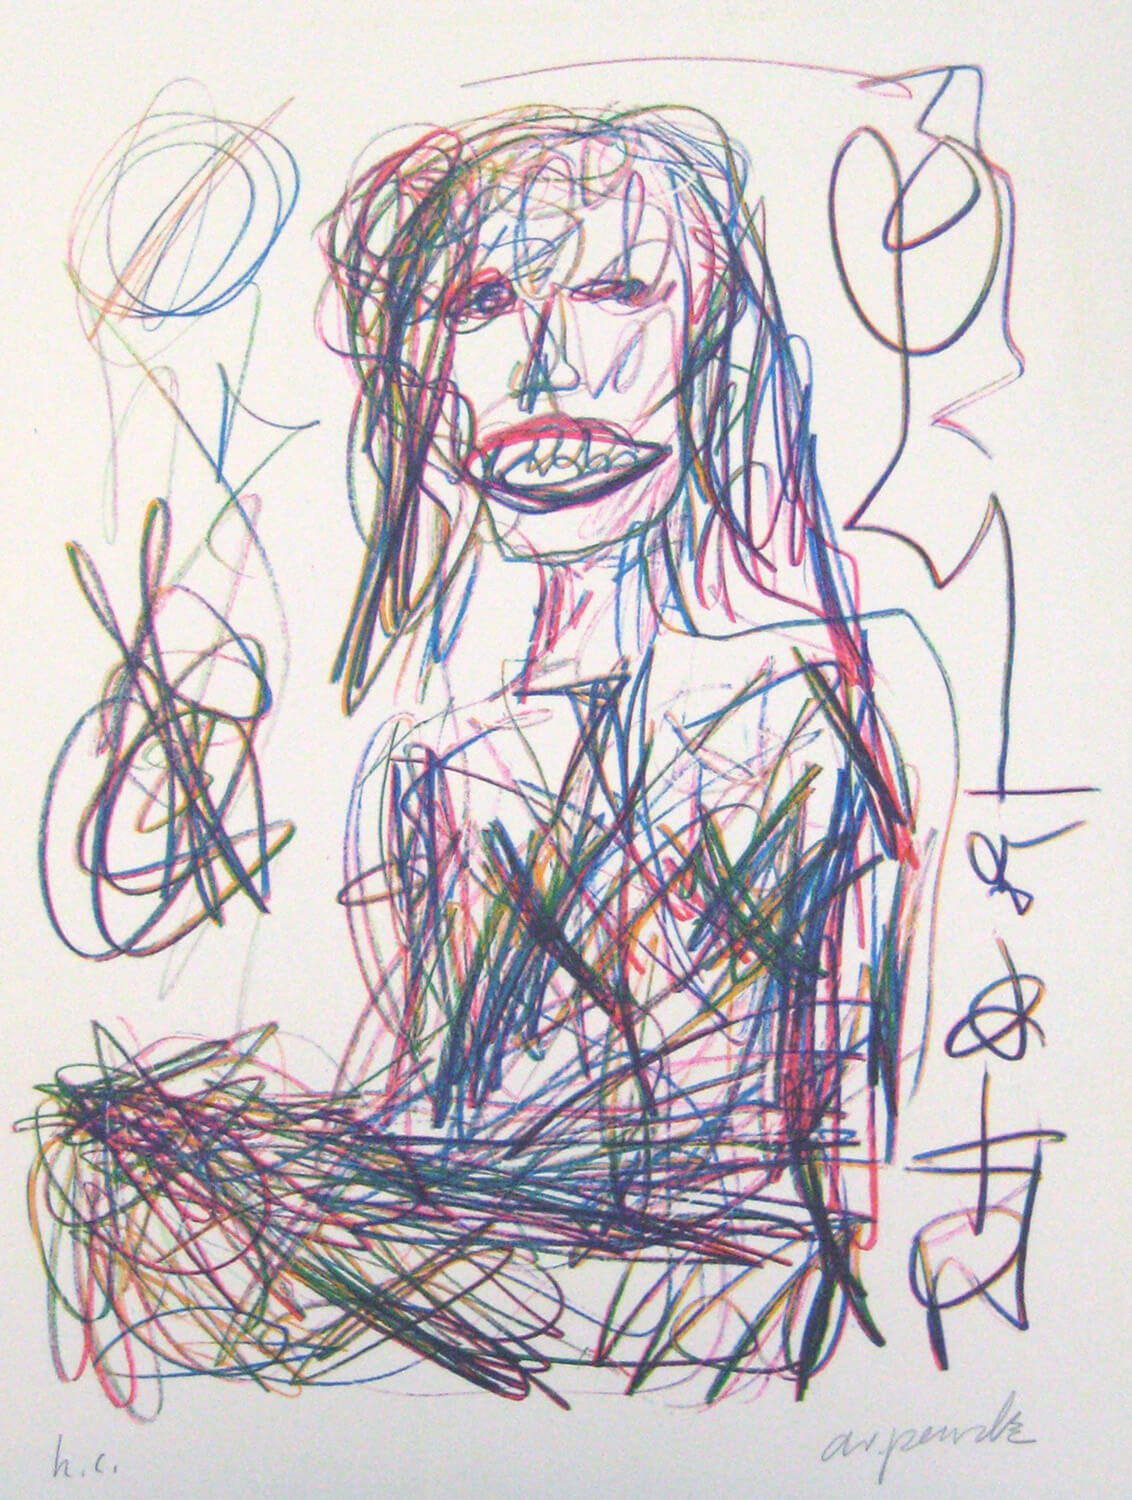 A. R. Penck, Die Journalistin, 1989, Farblithografie, h.c., 59,5 x 50 cm